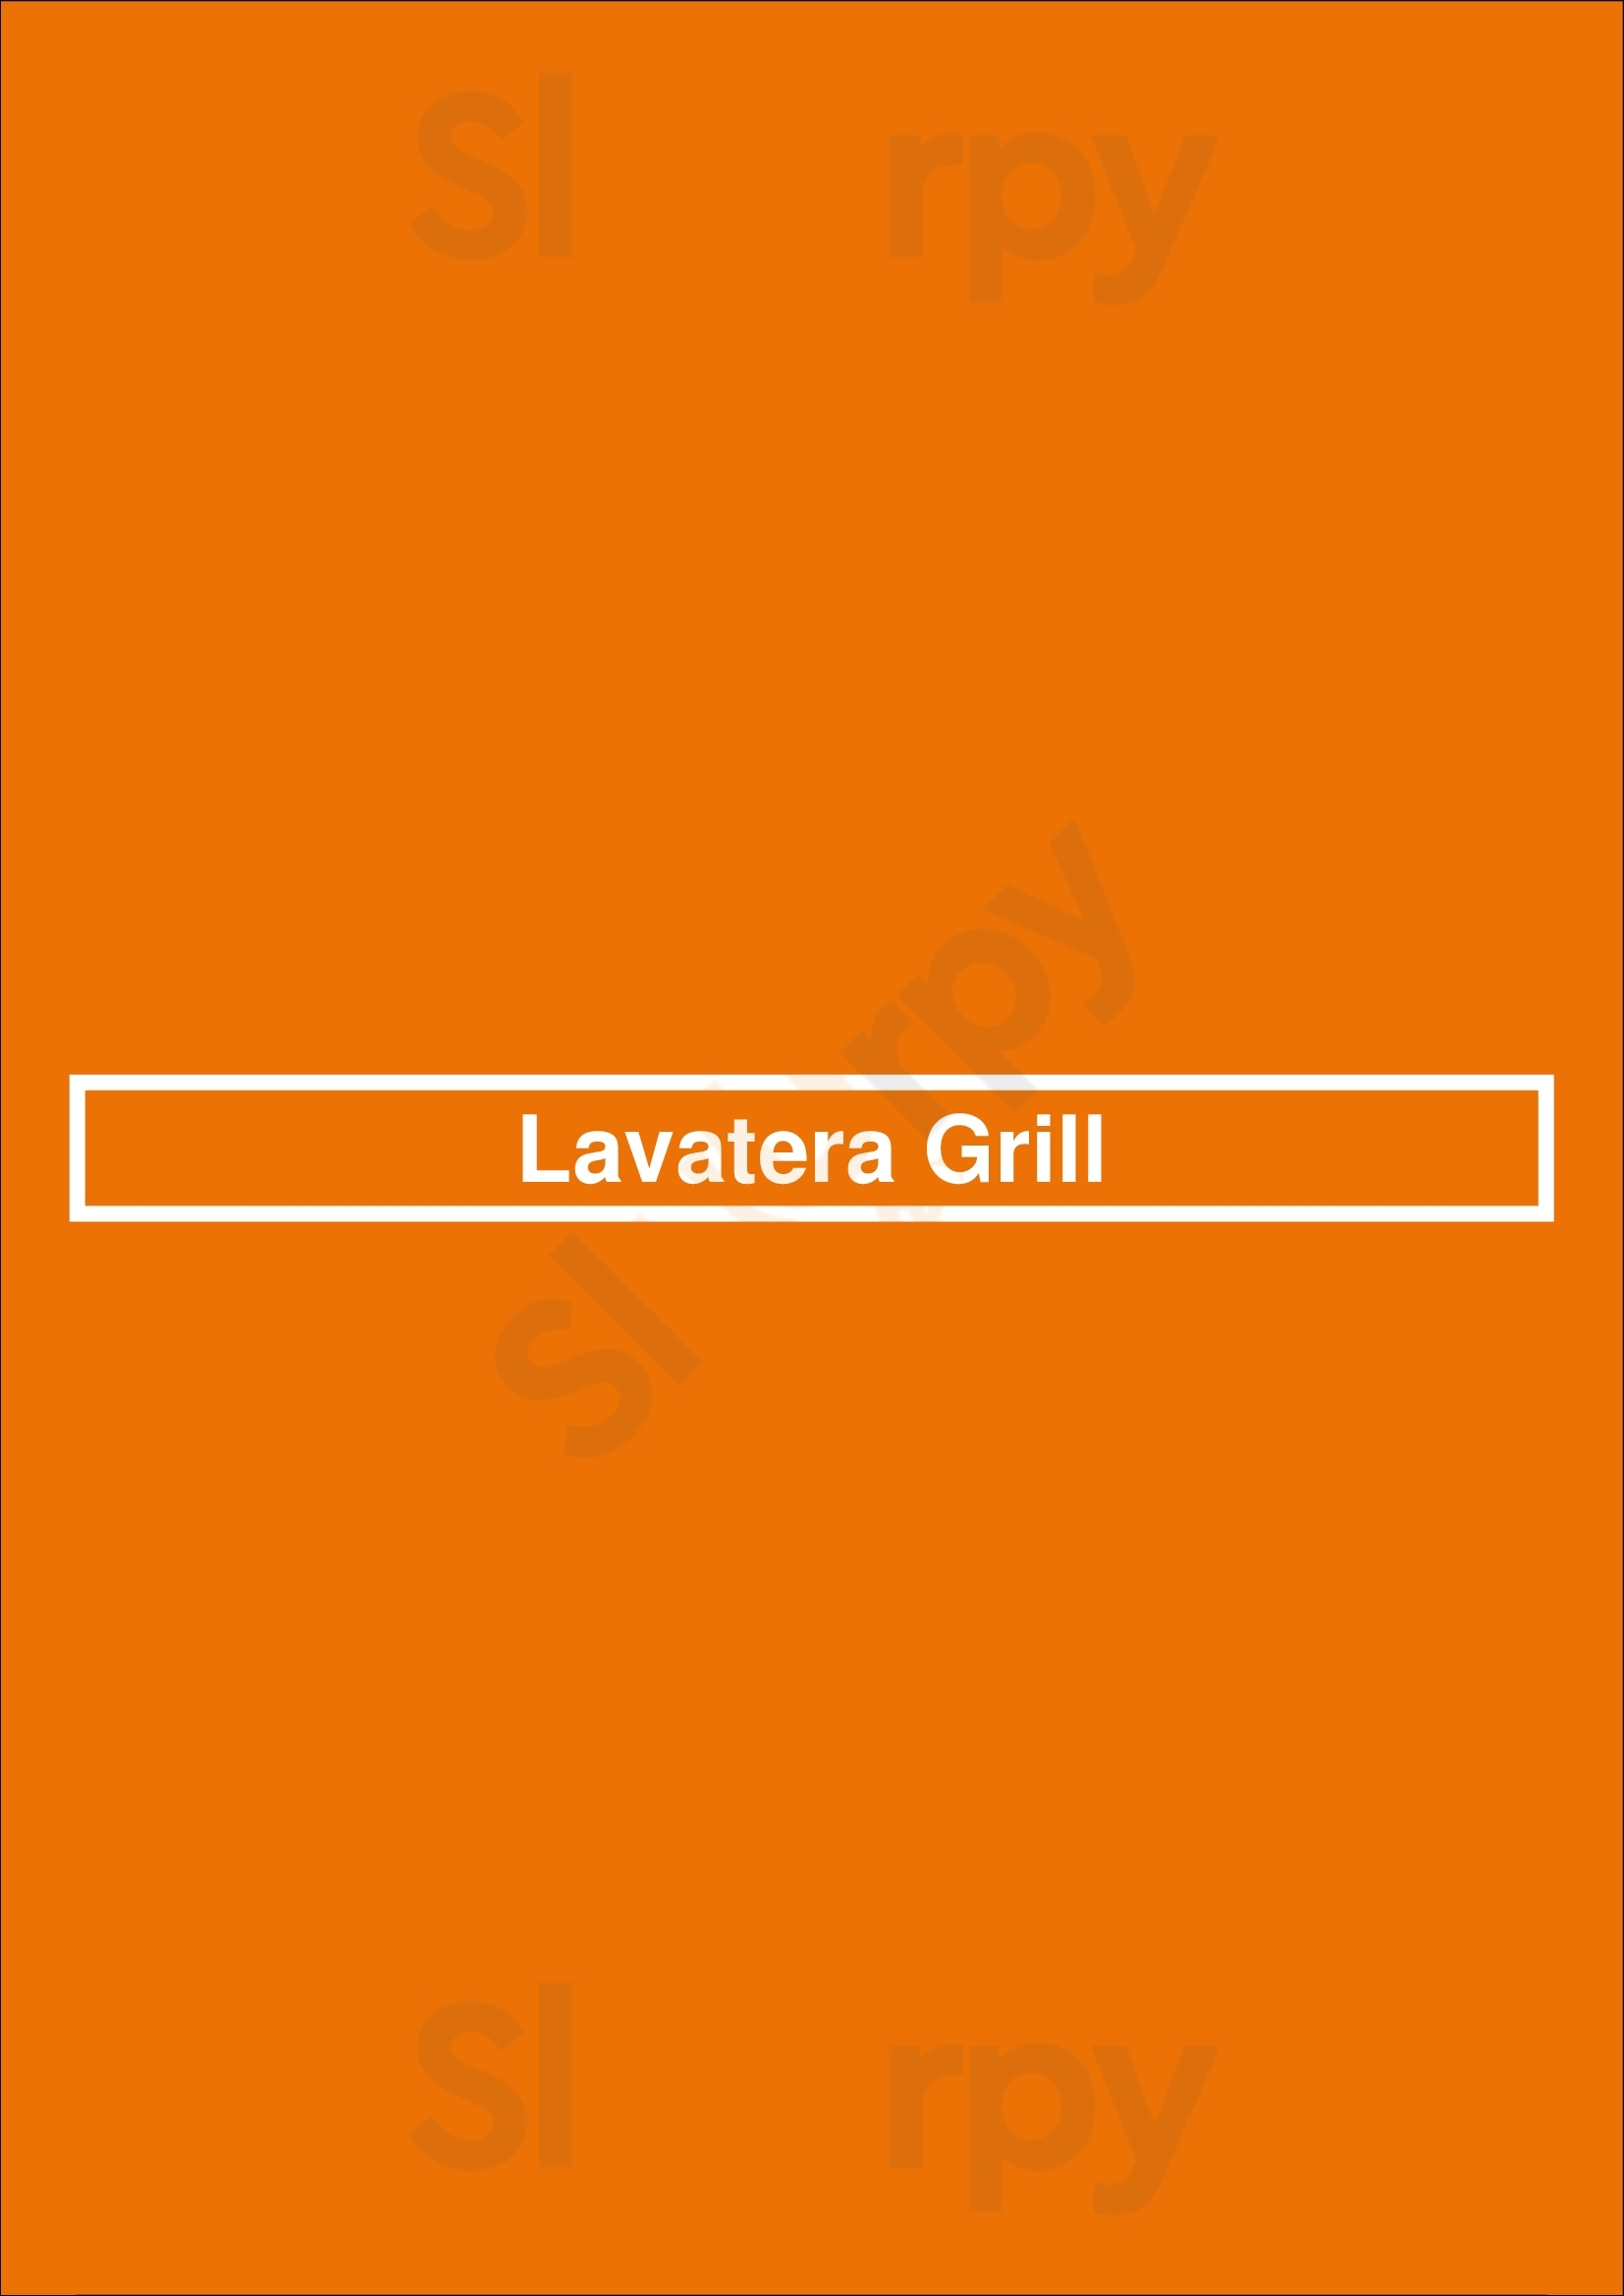 Lavatera Grill Brooklyn Menu - 1